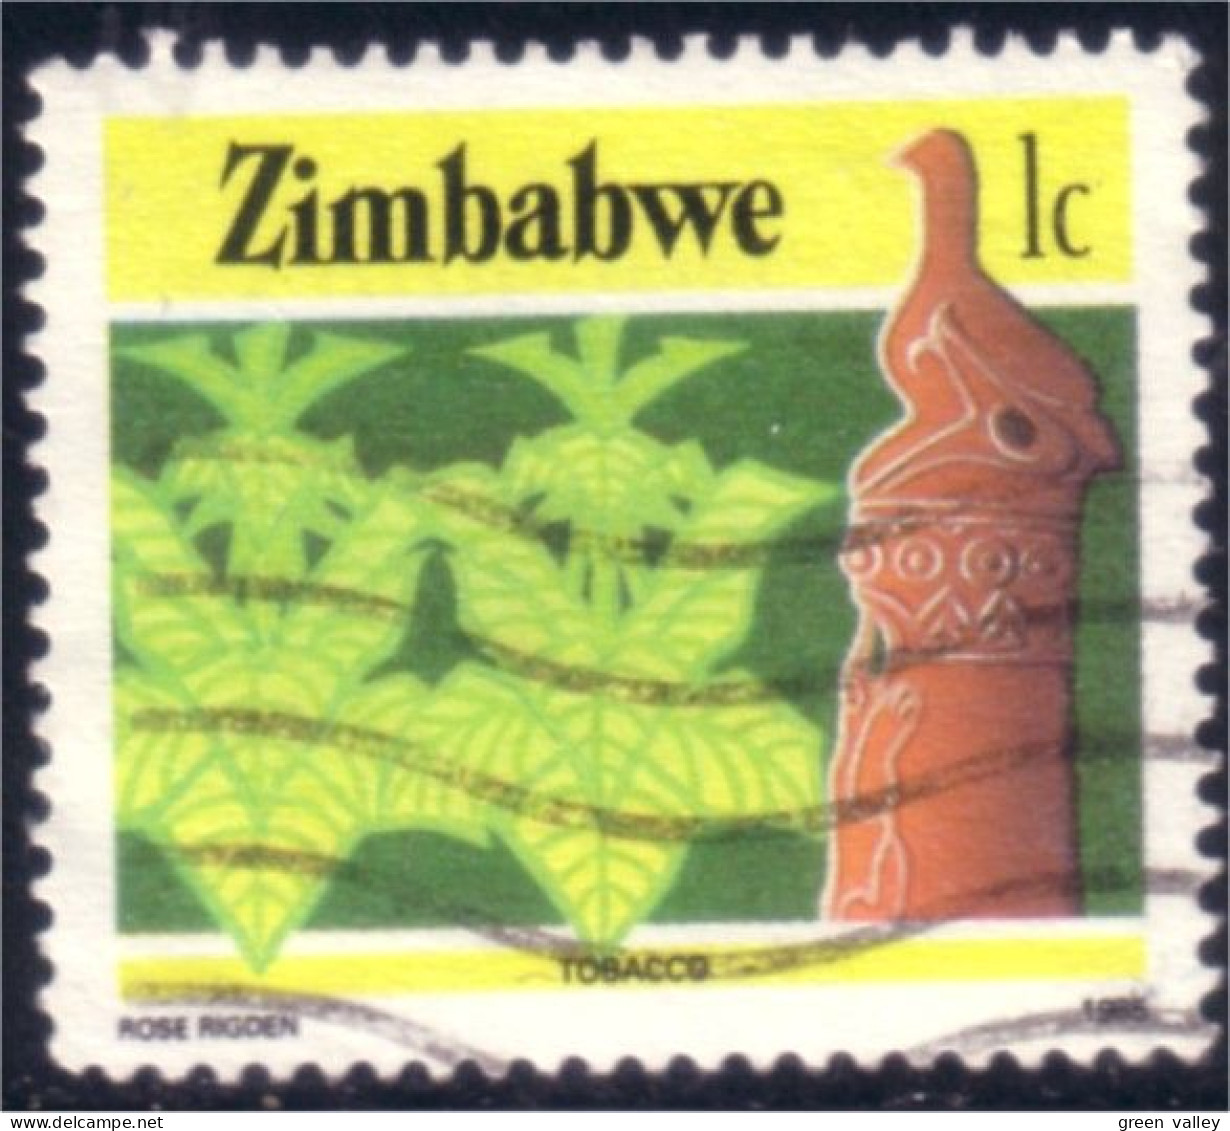 962 Zimbabwe Tabac Tobacco (ZIM-35) - Tabaco